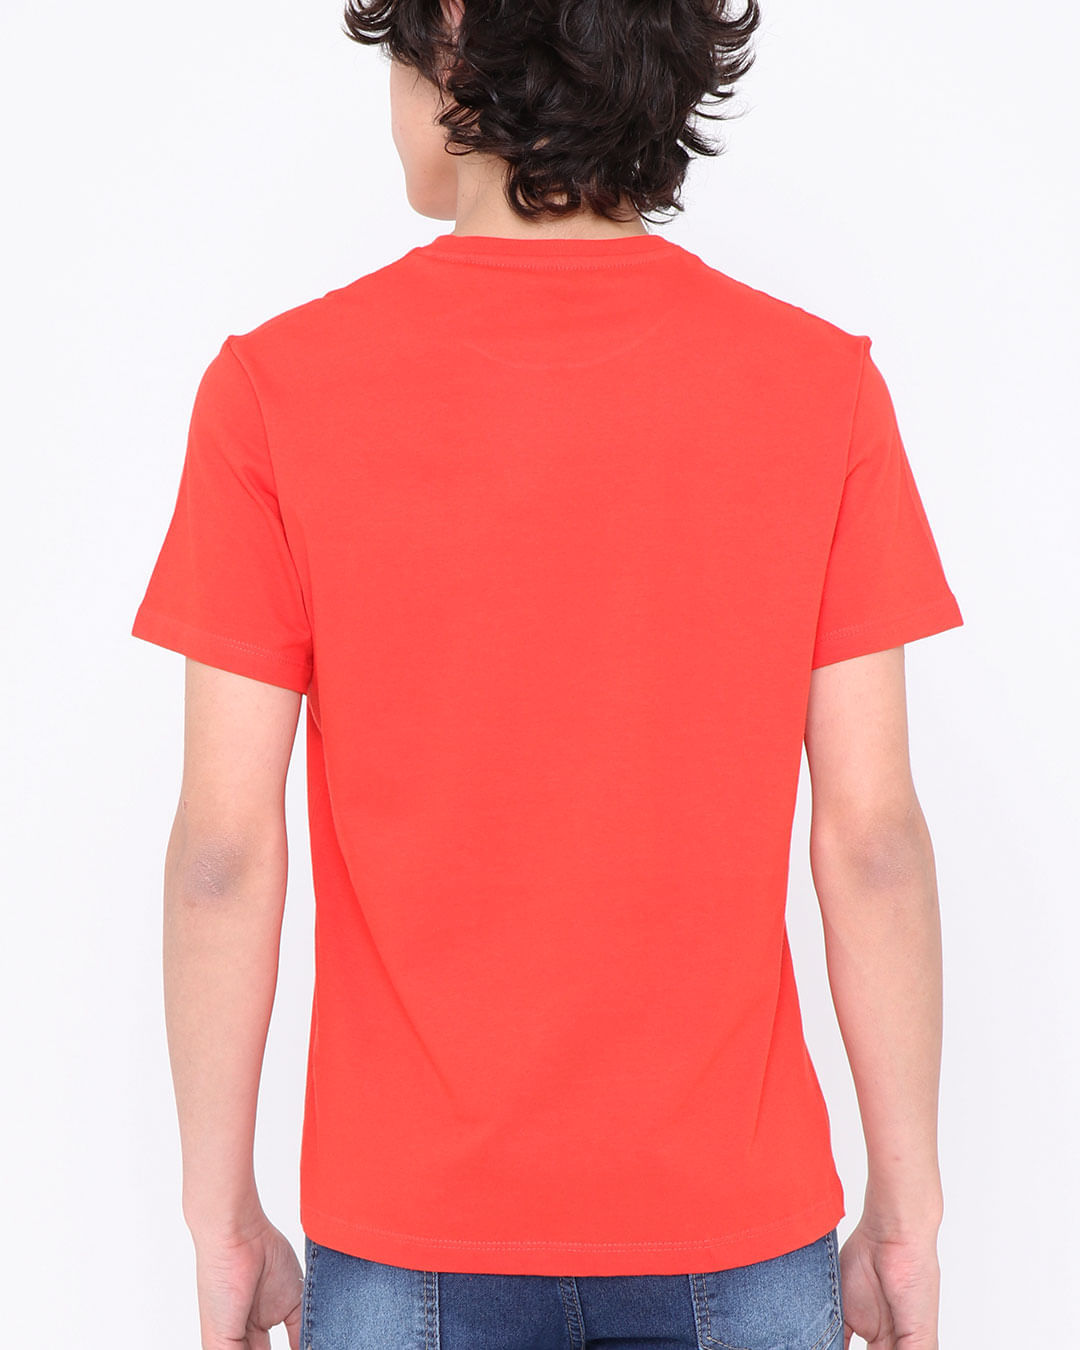 Camiseta-Juvenil-California-Vermelha